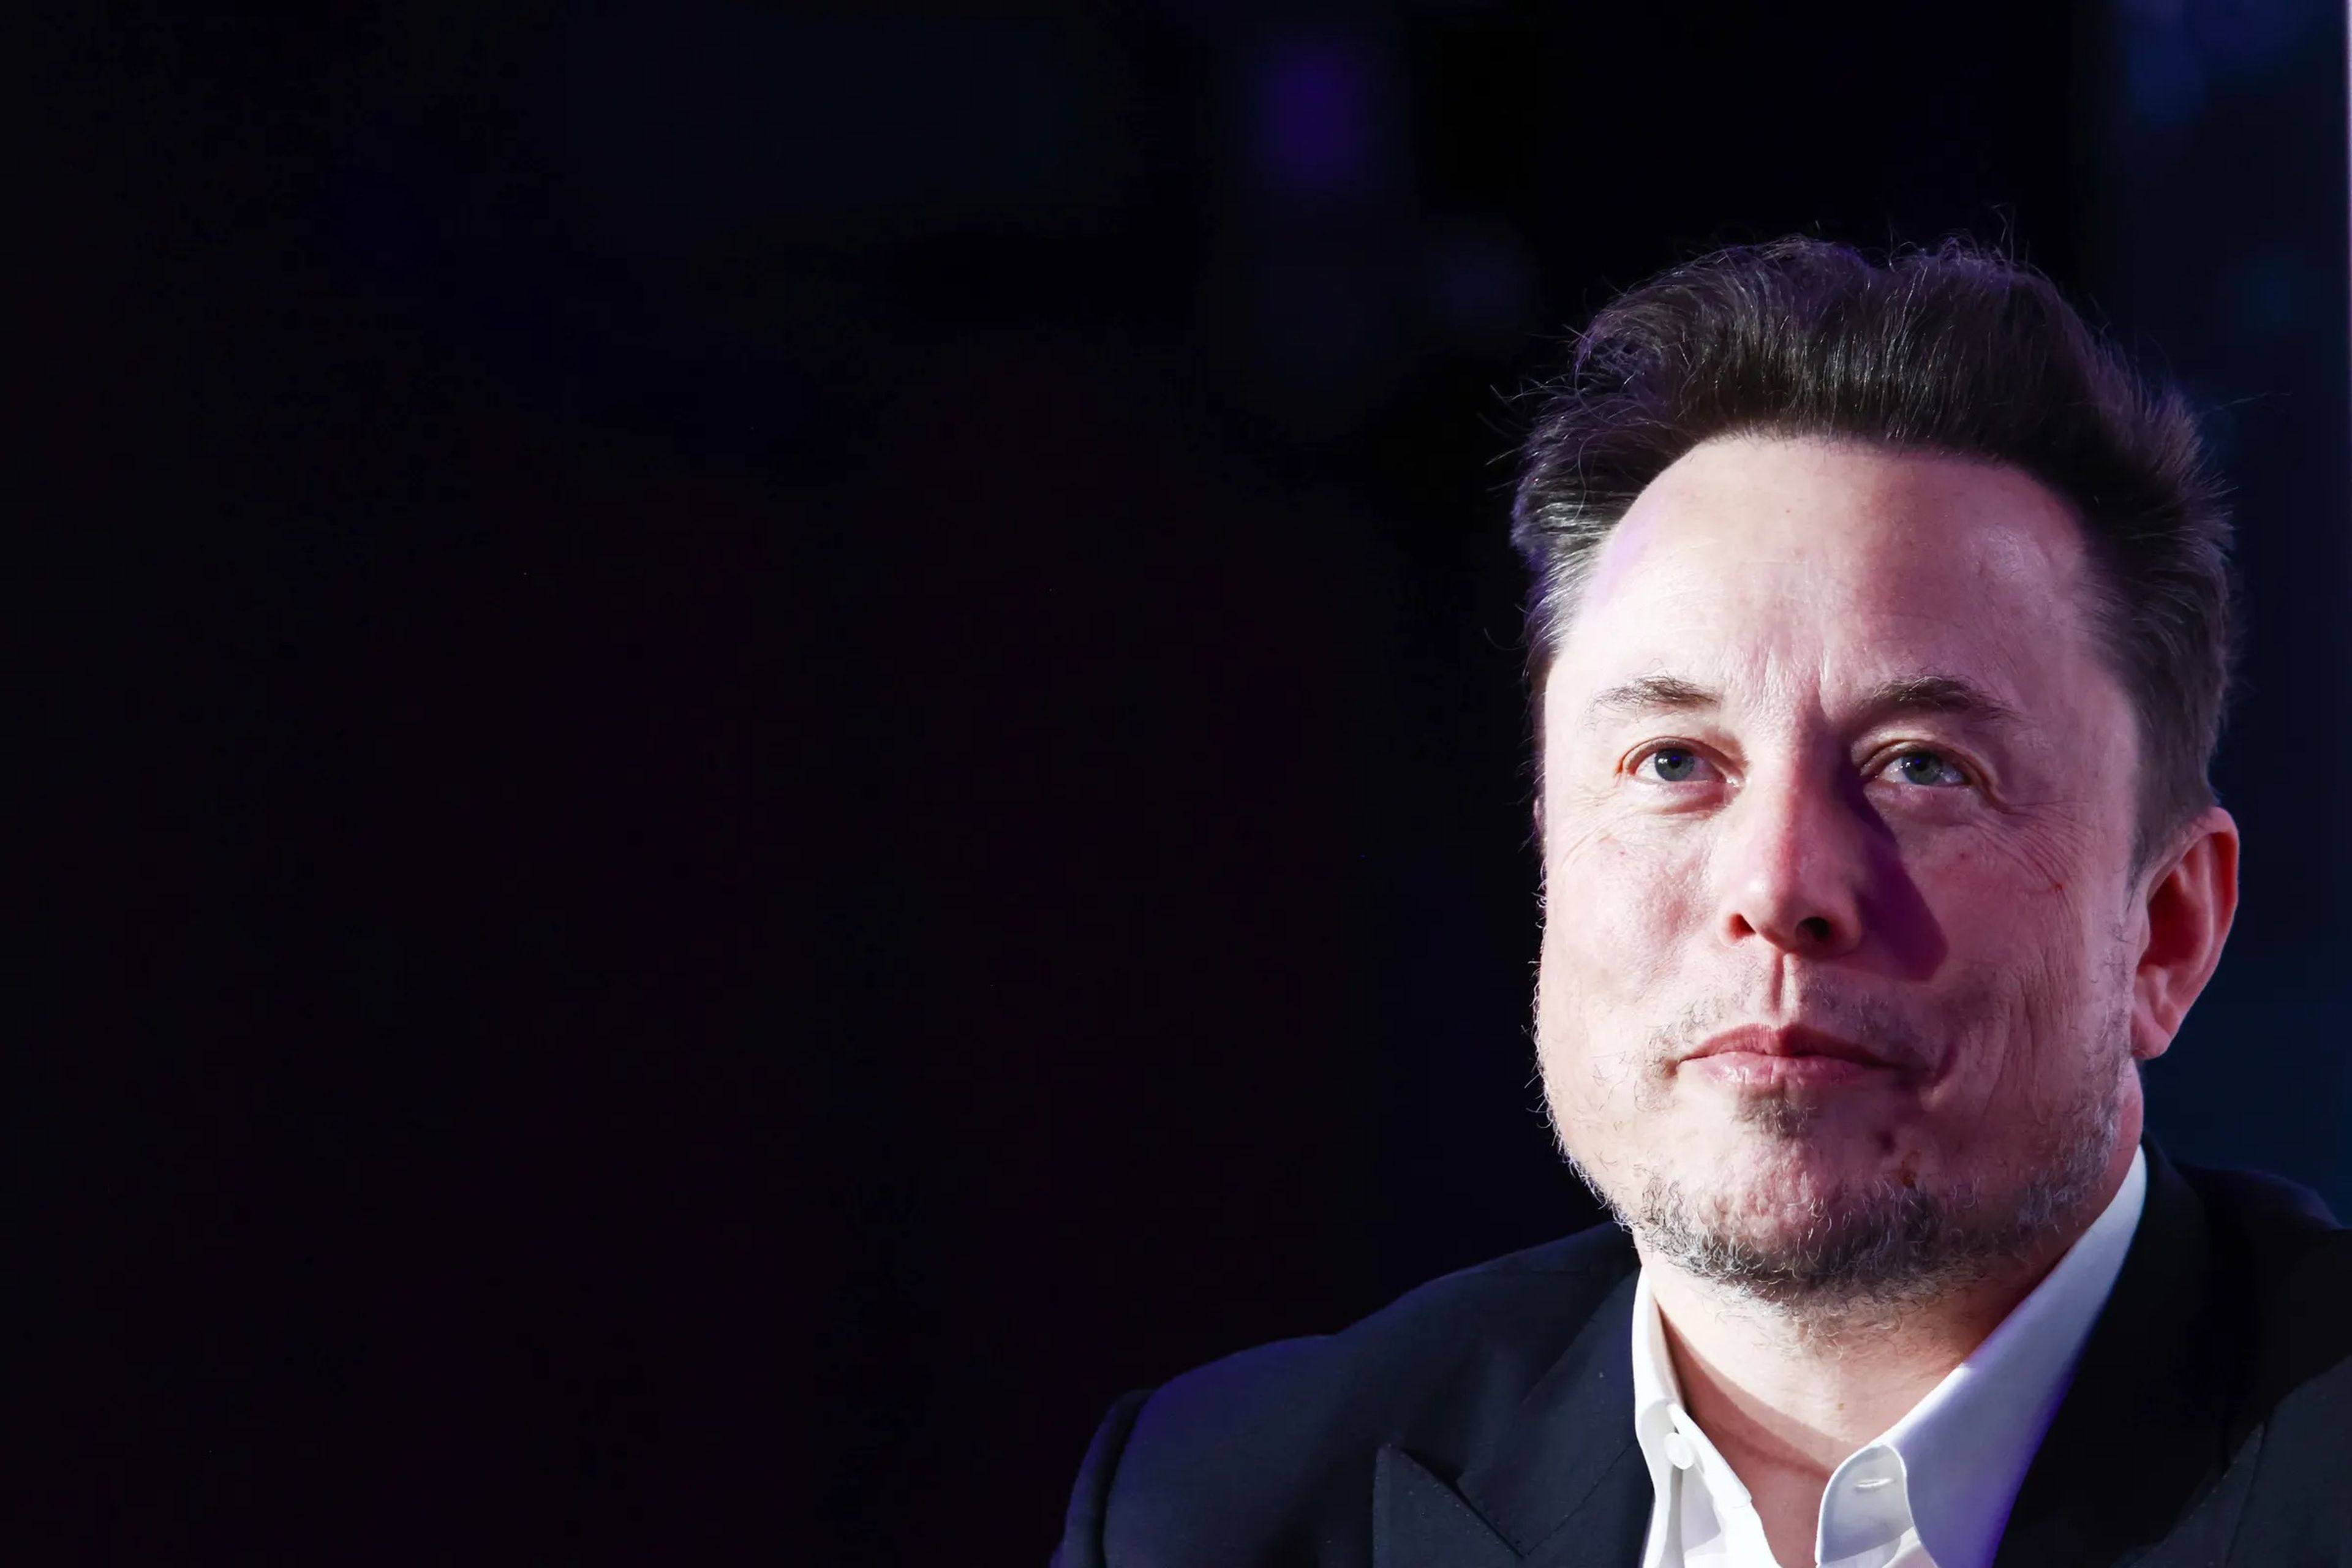 Elon Musk ha recalculado su análisis coste-beneficio de la IA, afirmando que puede haber una posibilidad entre cinco de que destruya la humanidad, pero los investigadores de seguridad dicen que está subestimándola.